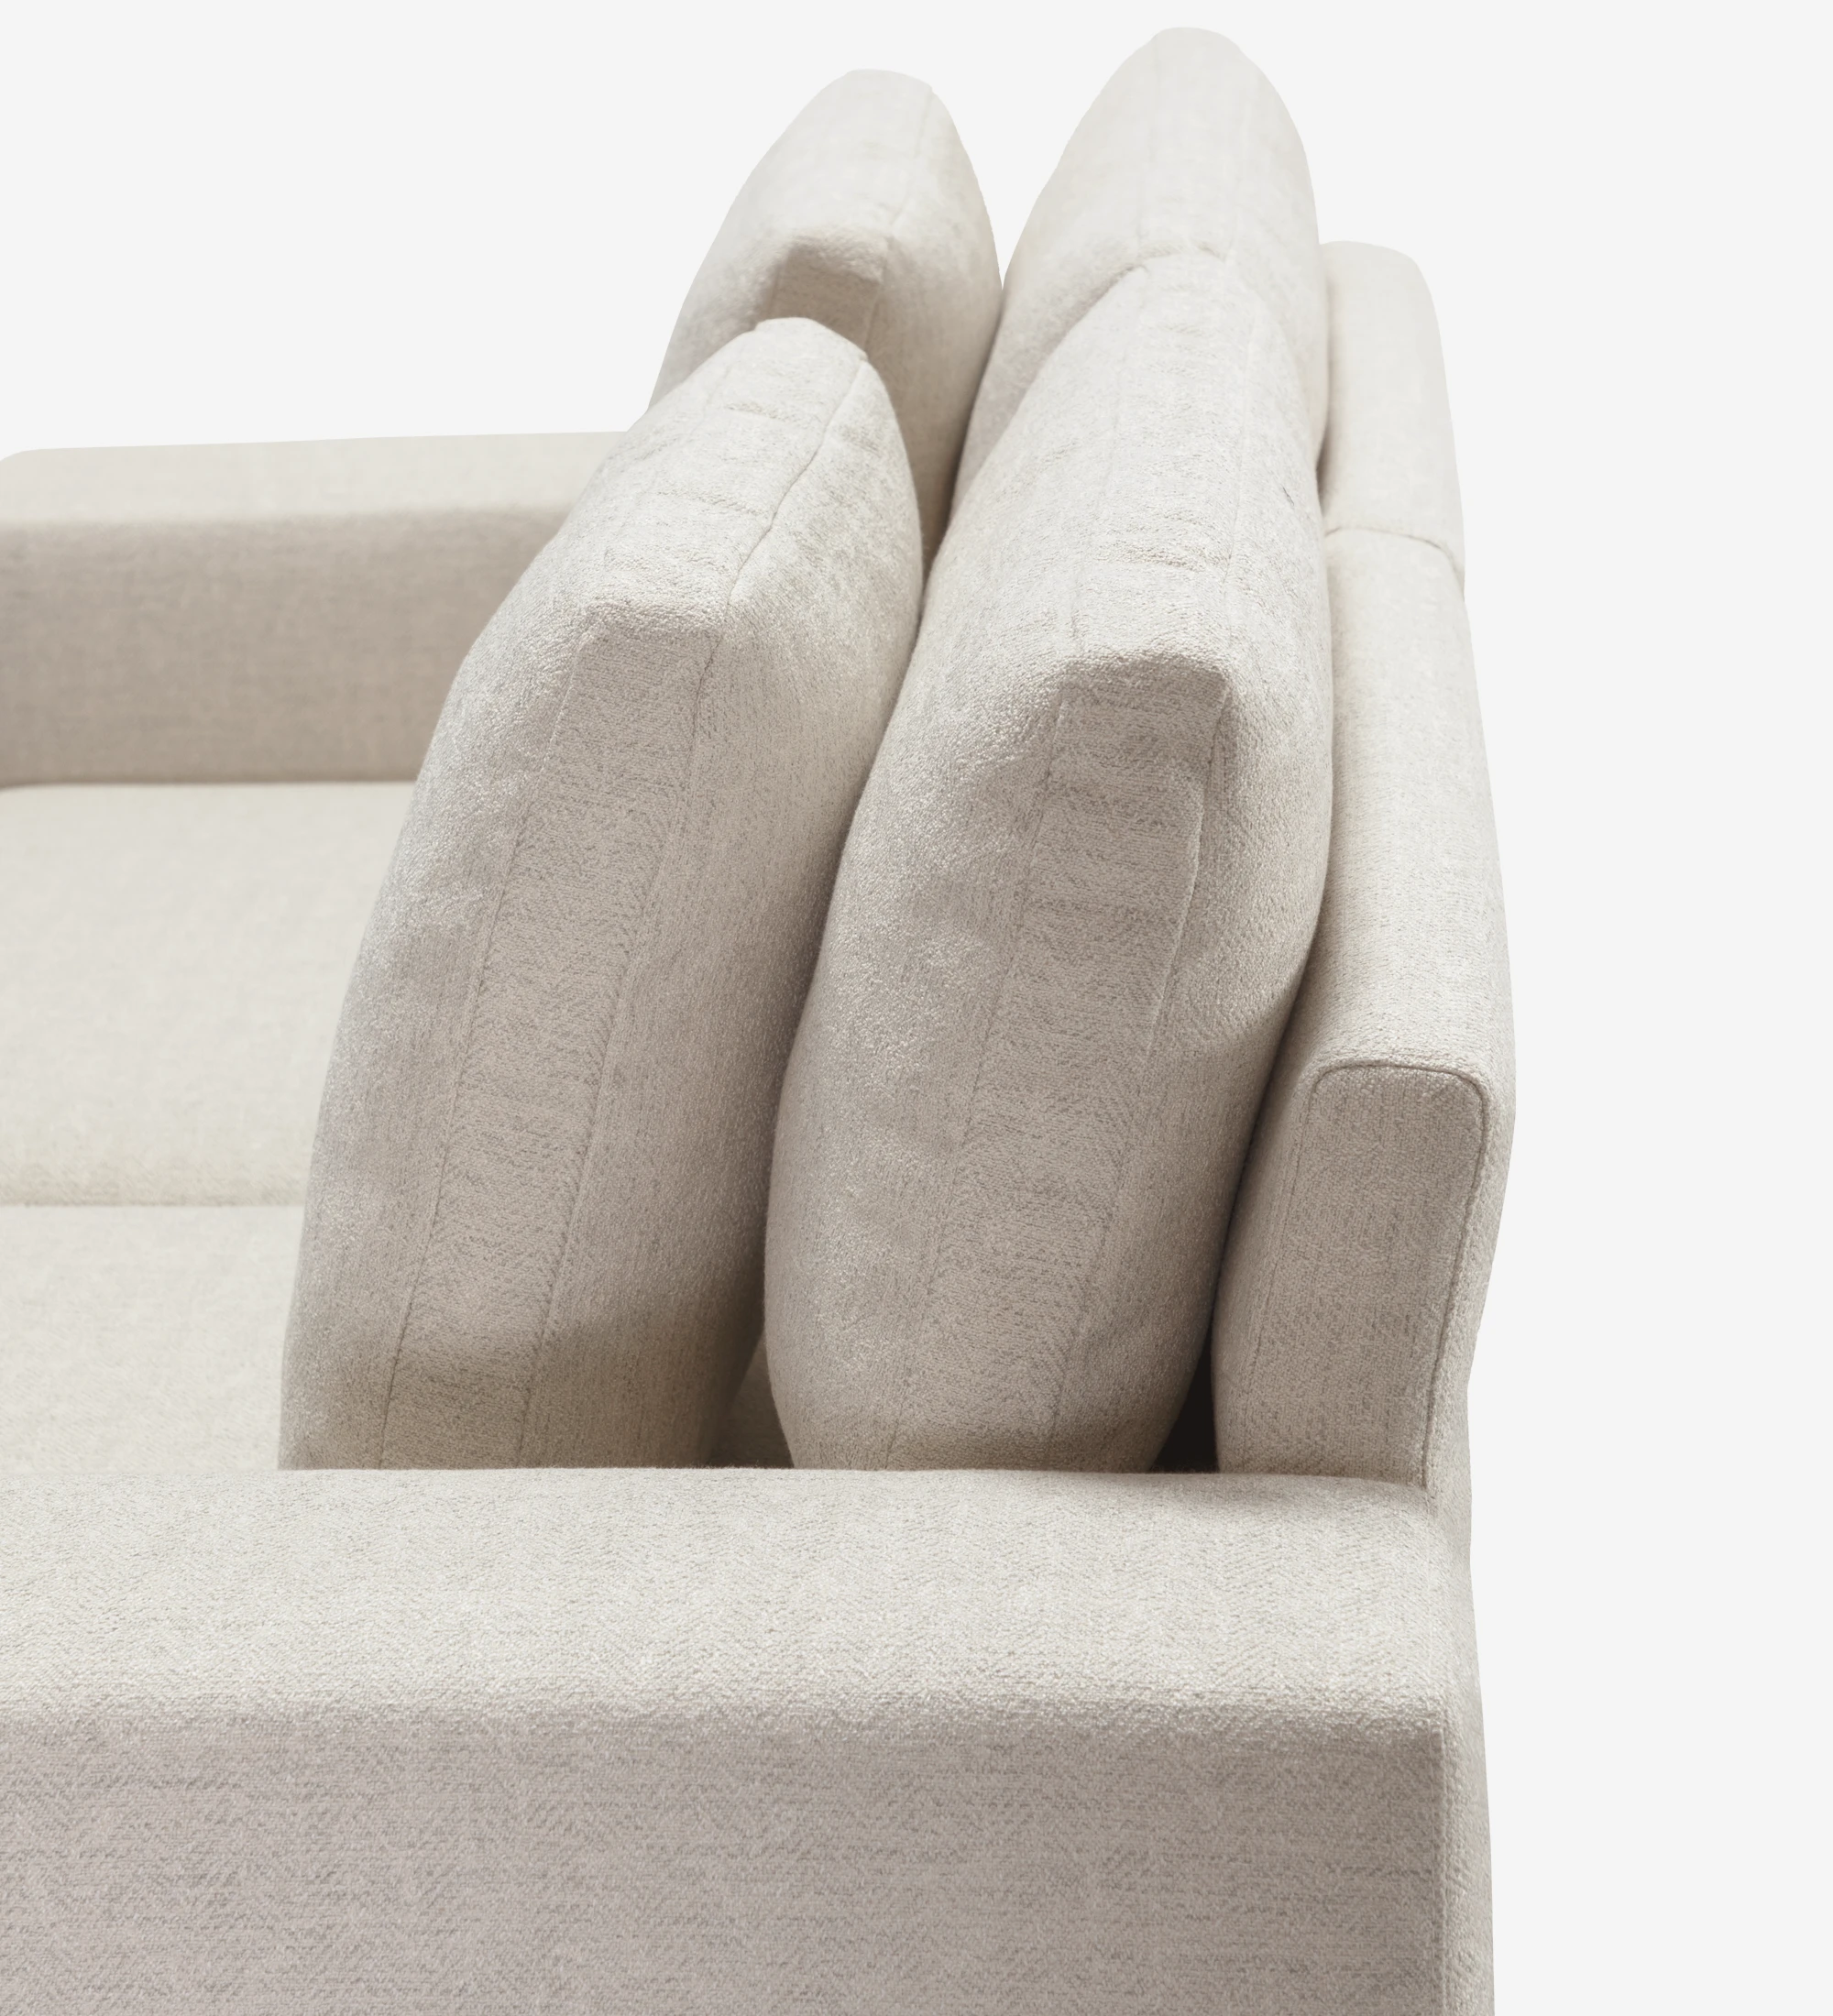 Sofá Dallas 3 plazas tapizado en tela beige, cojines respaldo abatibles, pies lacados en negro, 225 cm.